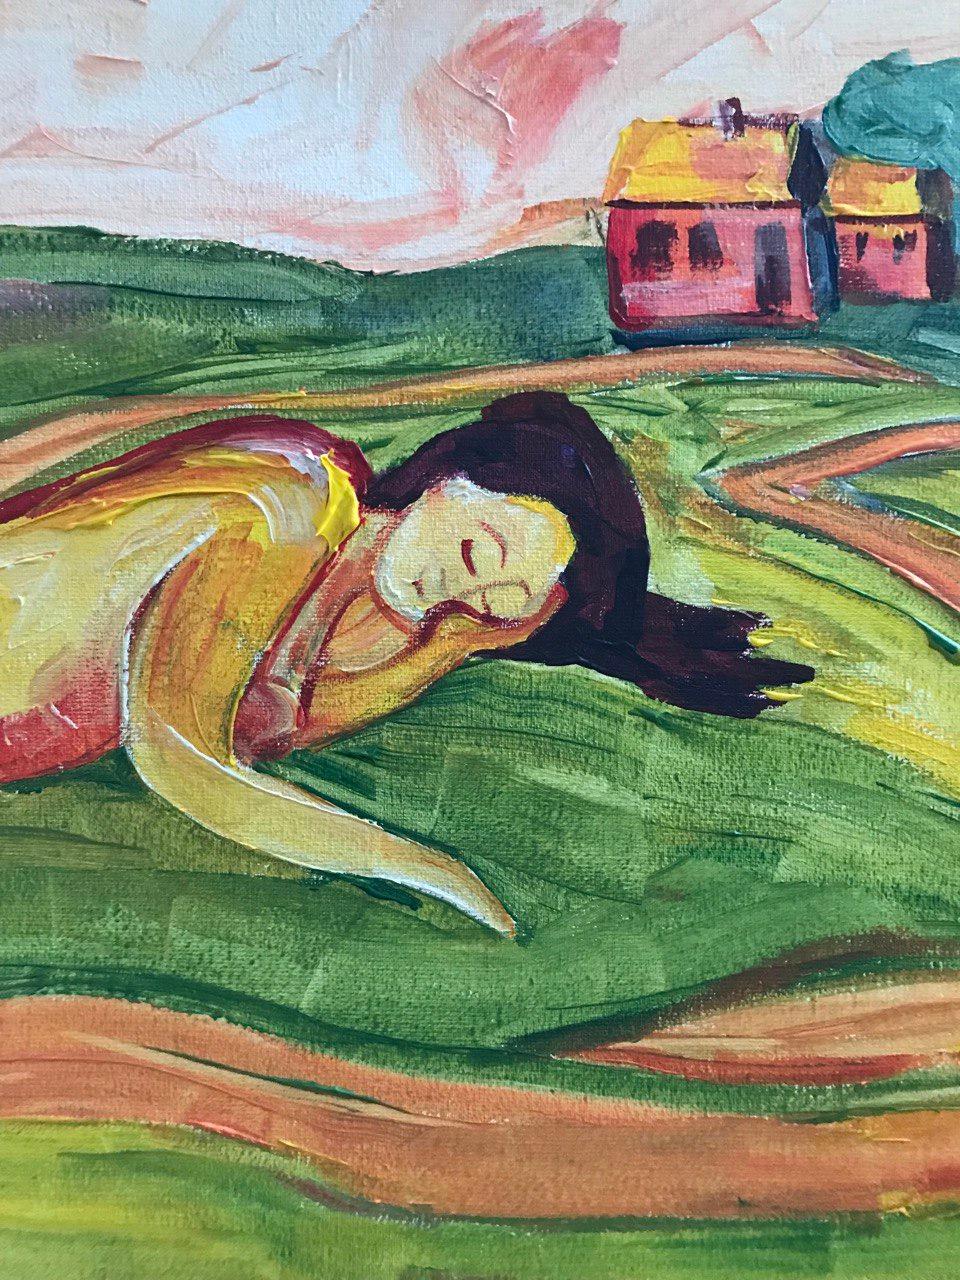  In diesem faszinierenden Werk wird der Betrachter auf eine ruhige Wiese versetzt, wo eine schlafende Frau inmitten der grünen Pracht der Natur ruht. Vor dem Hintergrund einer ruhigen Landschaft mit hoch aufragenden Bäumen und einem entfernten